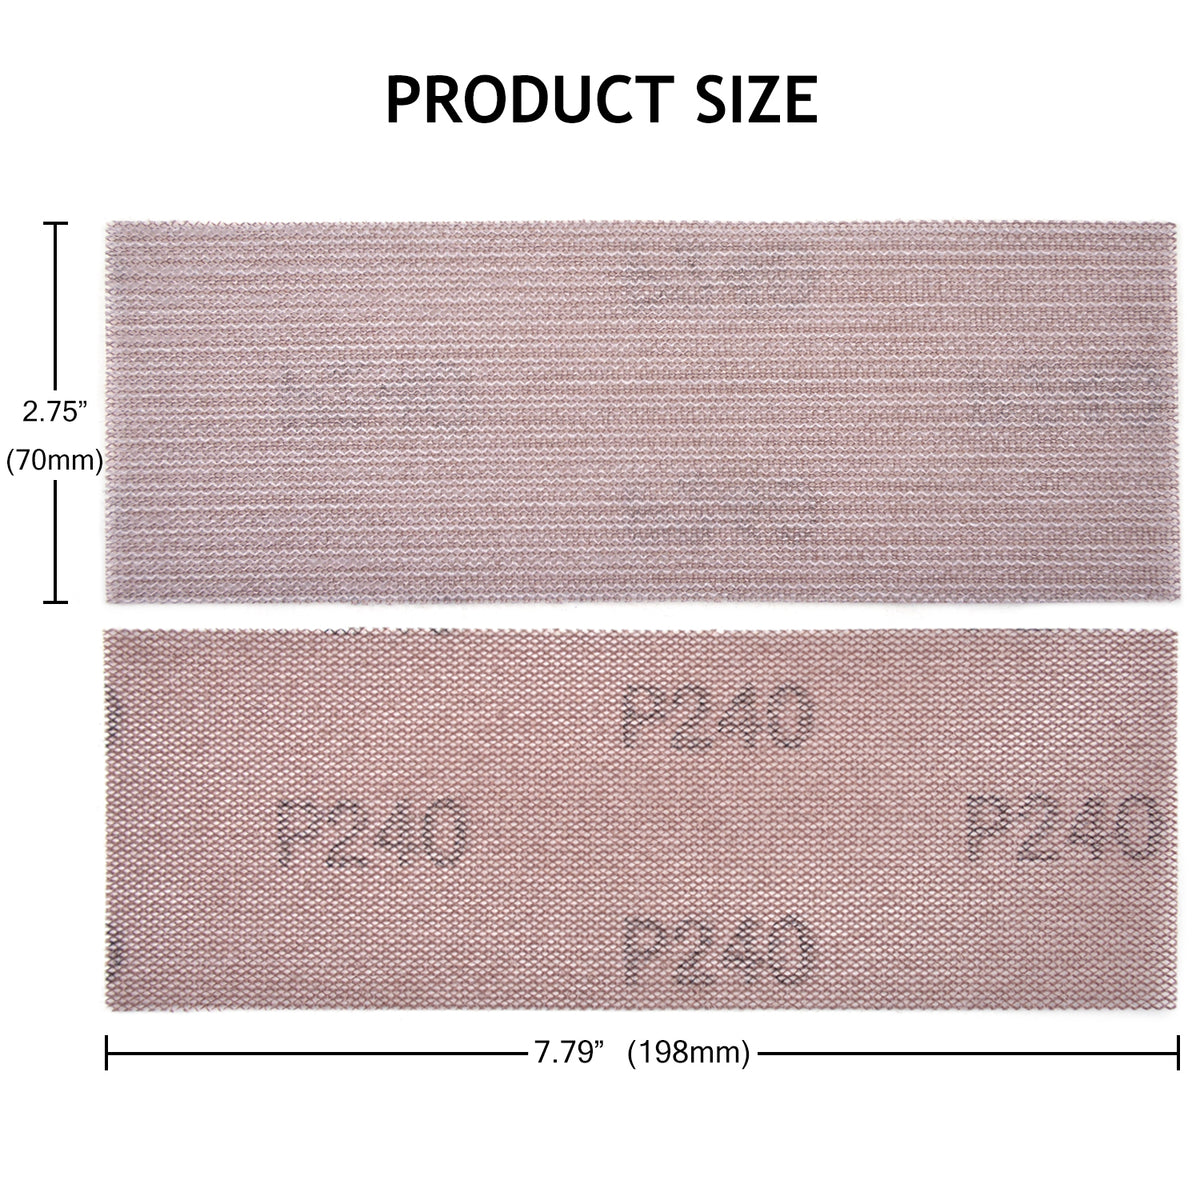 3 x 8" (70 x 198mm) Hook & Loop or Clip on Sander Pads，Mesh Dust Free Sandpaper (80-600), 1 PC